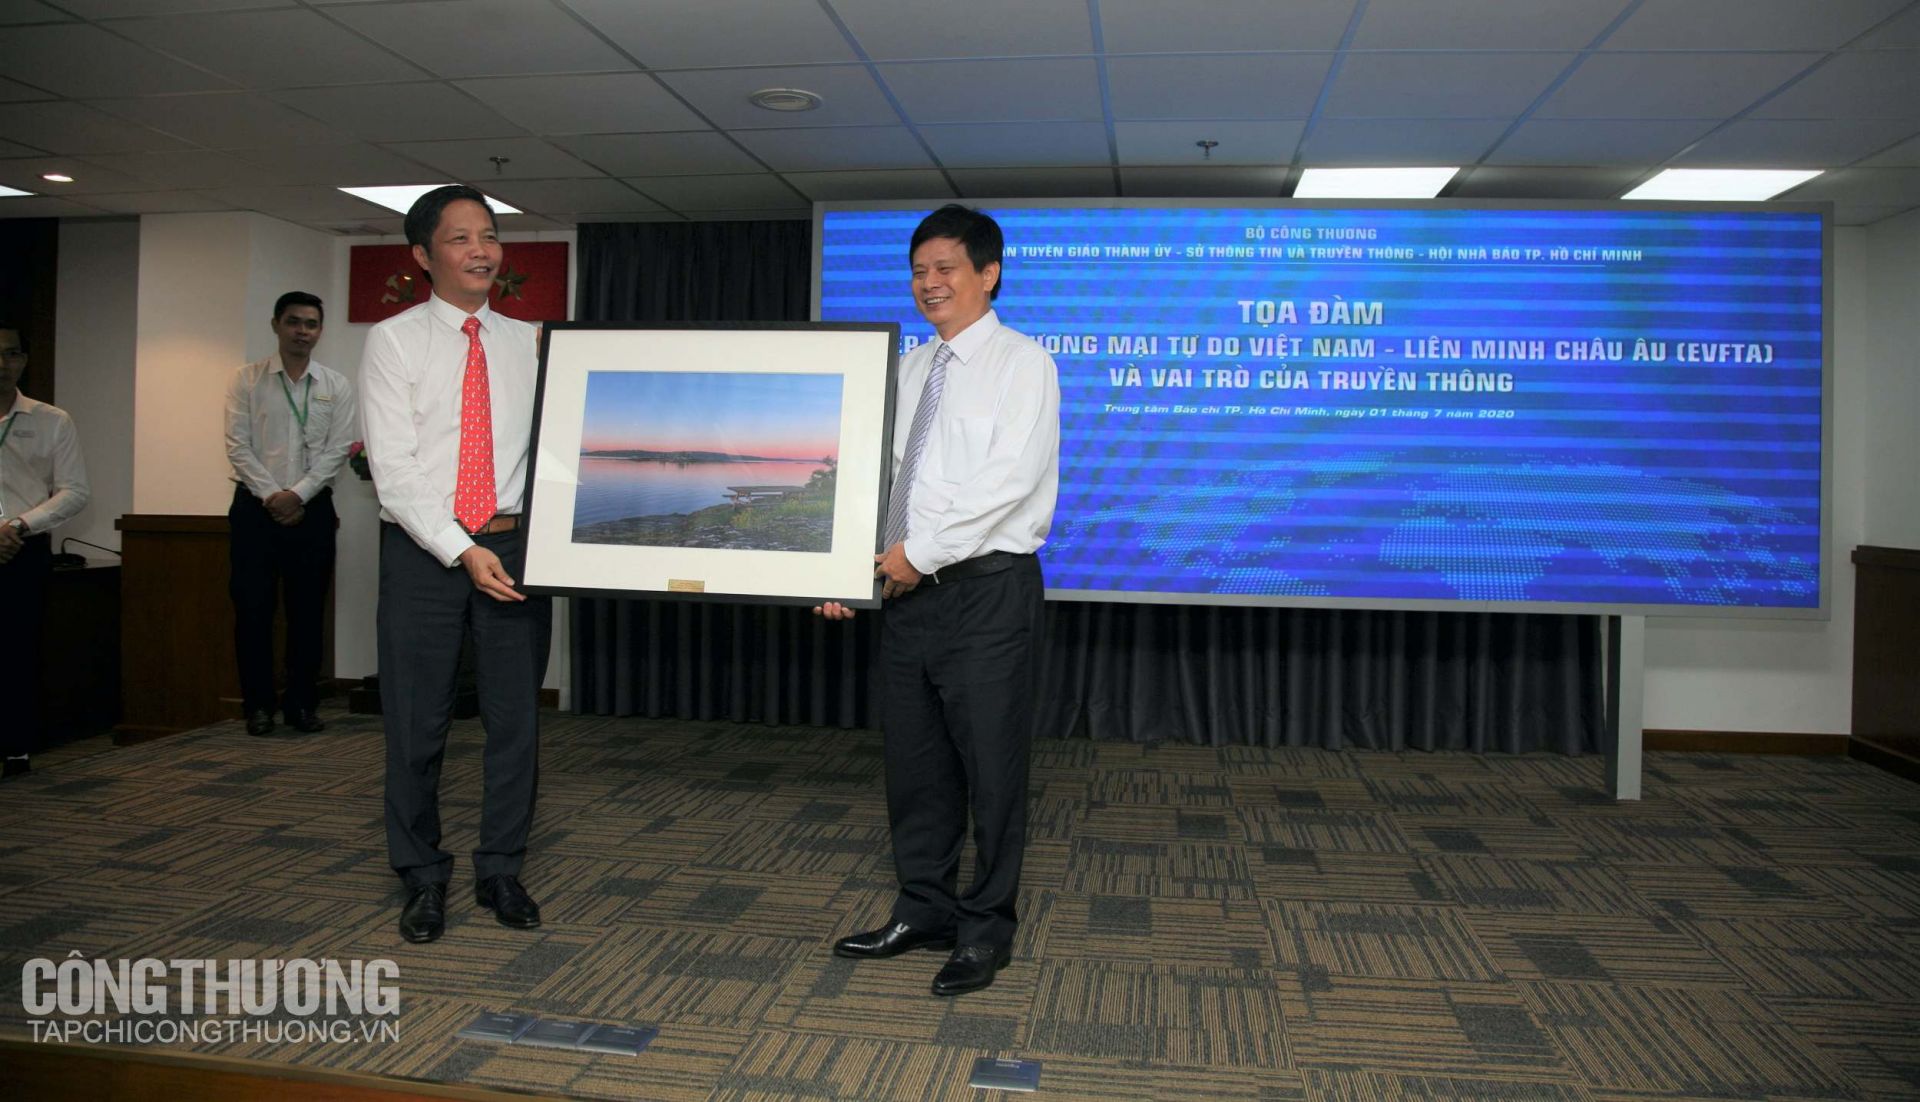 Bộ Trưởng Bộ Công Thương Trần Tuấn Anh tặng quà lưu niệm cho Hội Nhà Báo TP, HCM